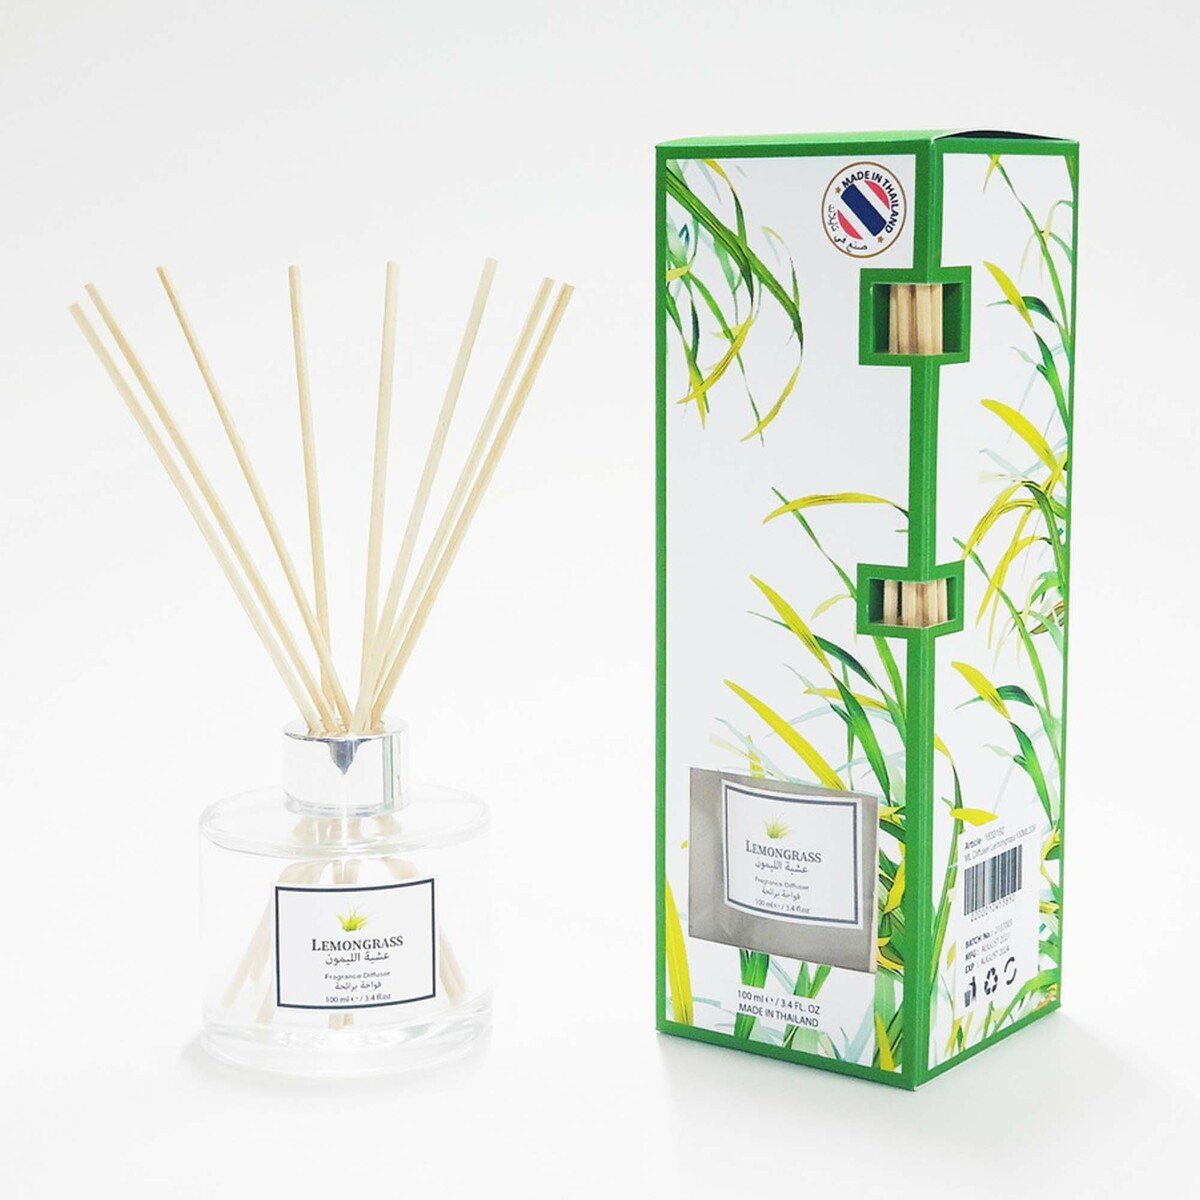 Maple Leaf Fragrance Stick Diffuser Lemongrass 100ml 339